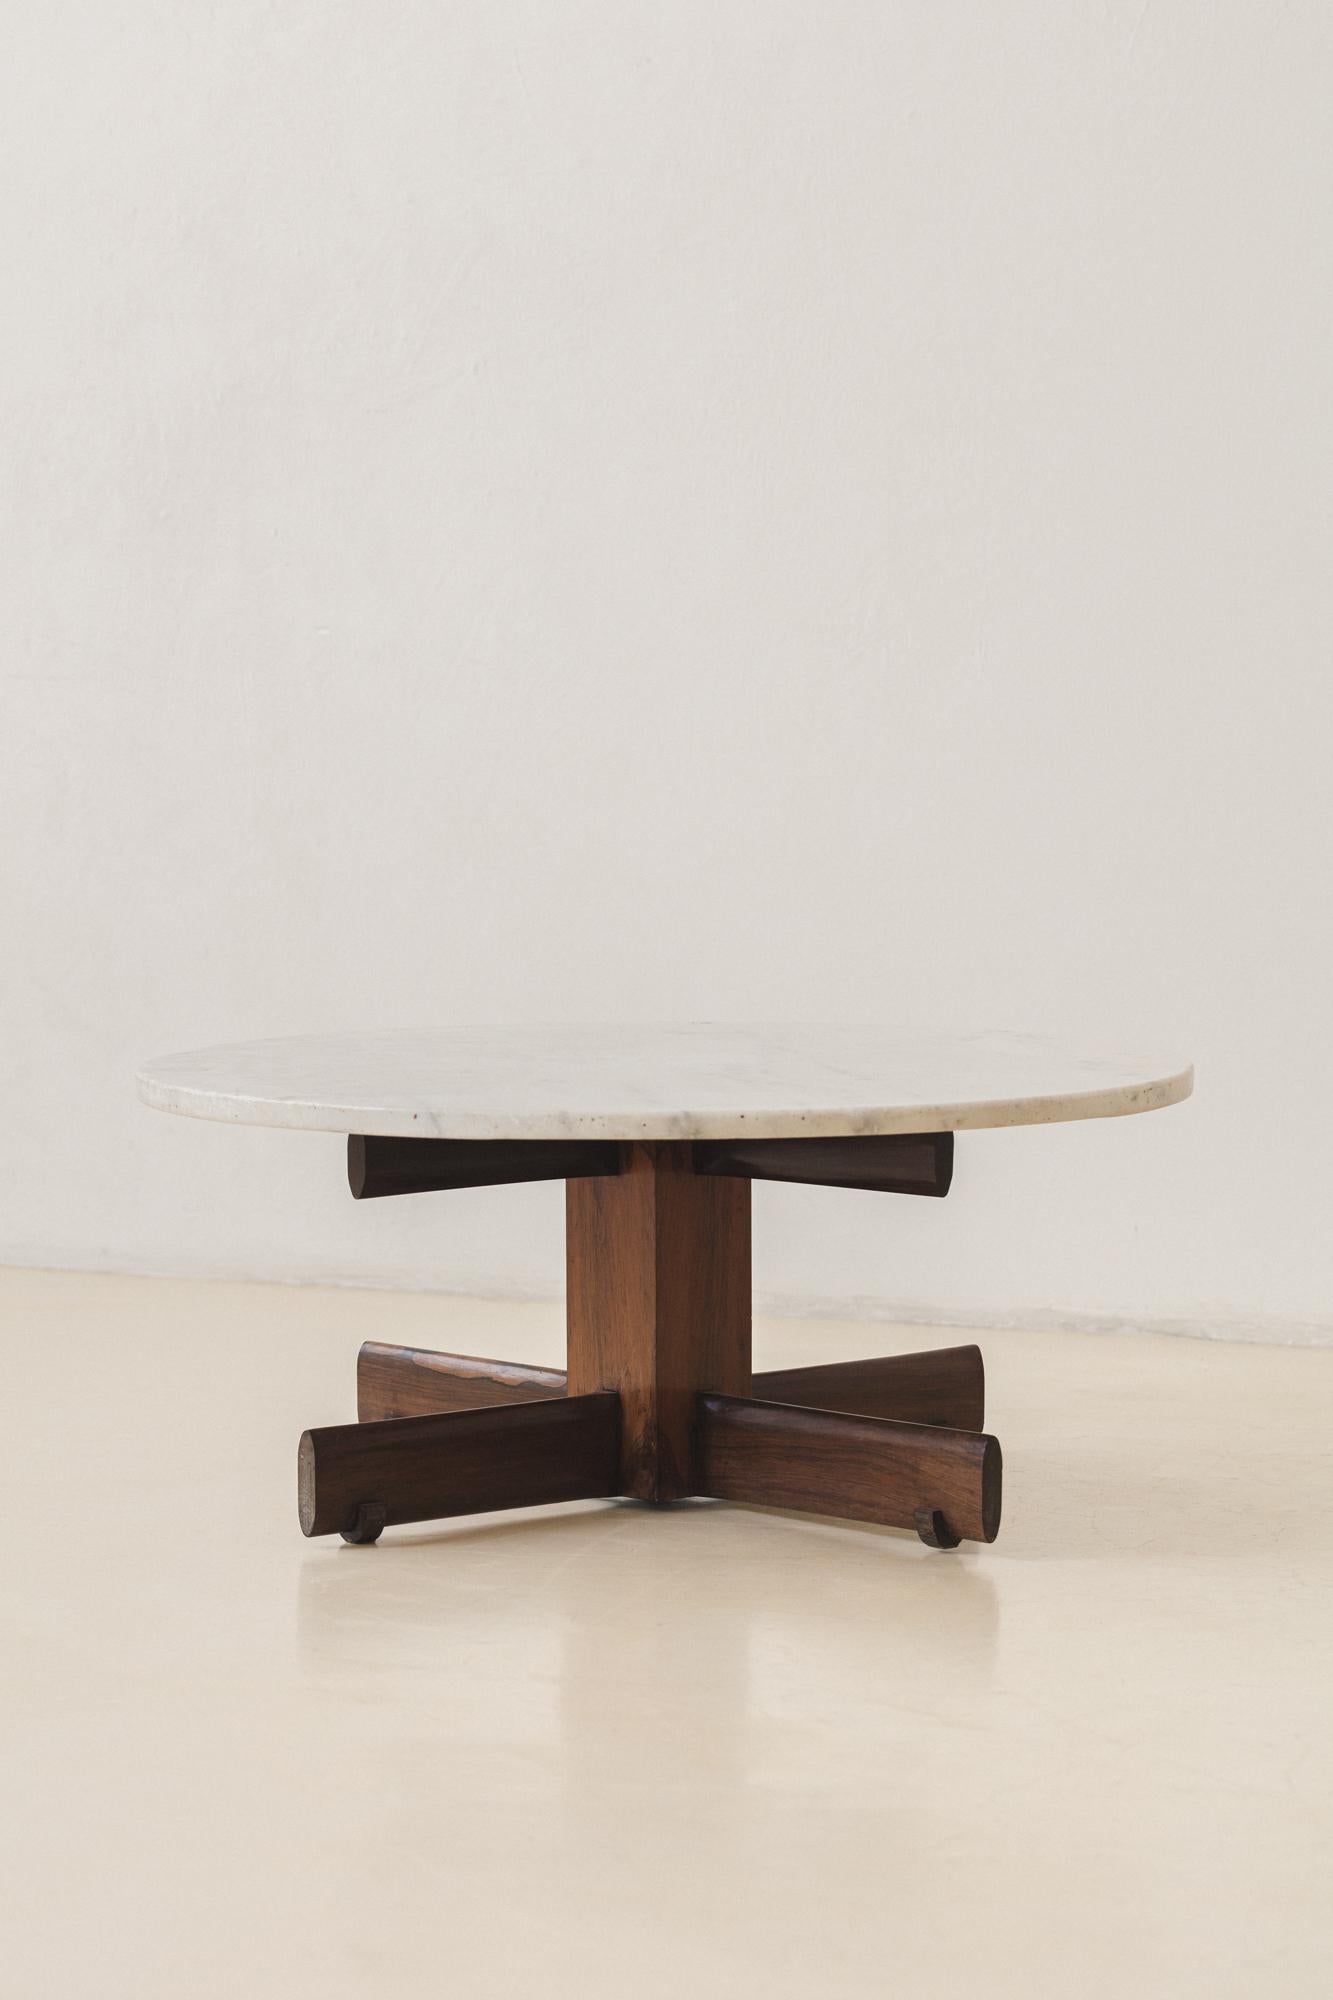 Cette table basse ronde a été produite dans les années 1960, avec les pieds et le plateau en forme de croix.

Cette table à manger pratique à quatre places présente des aménagements très bien conçus, comme la croix qui soutient le plateau et les